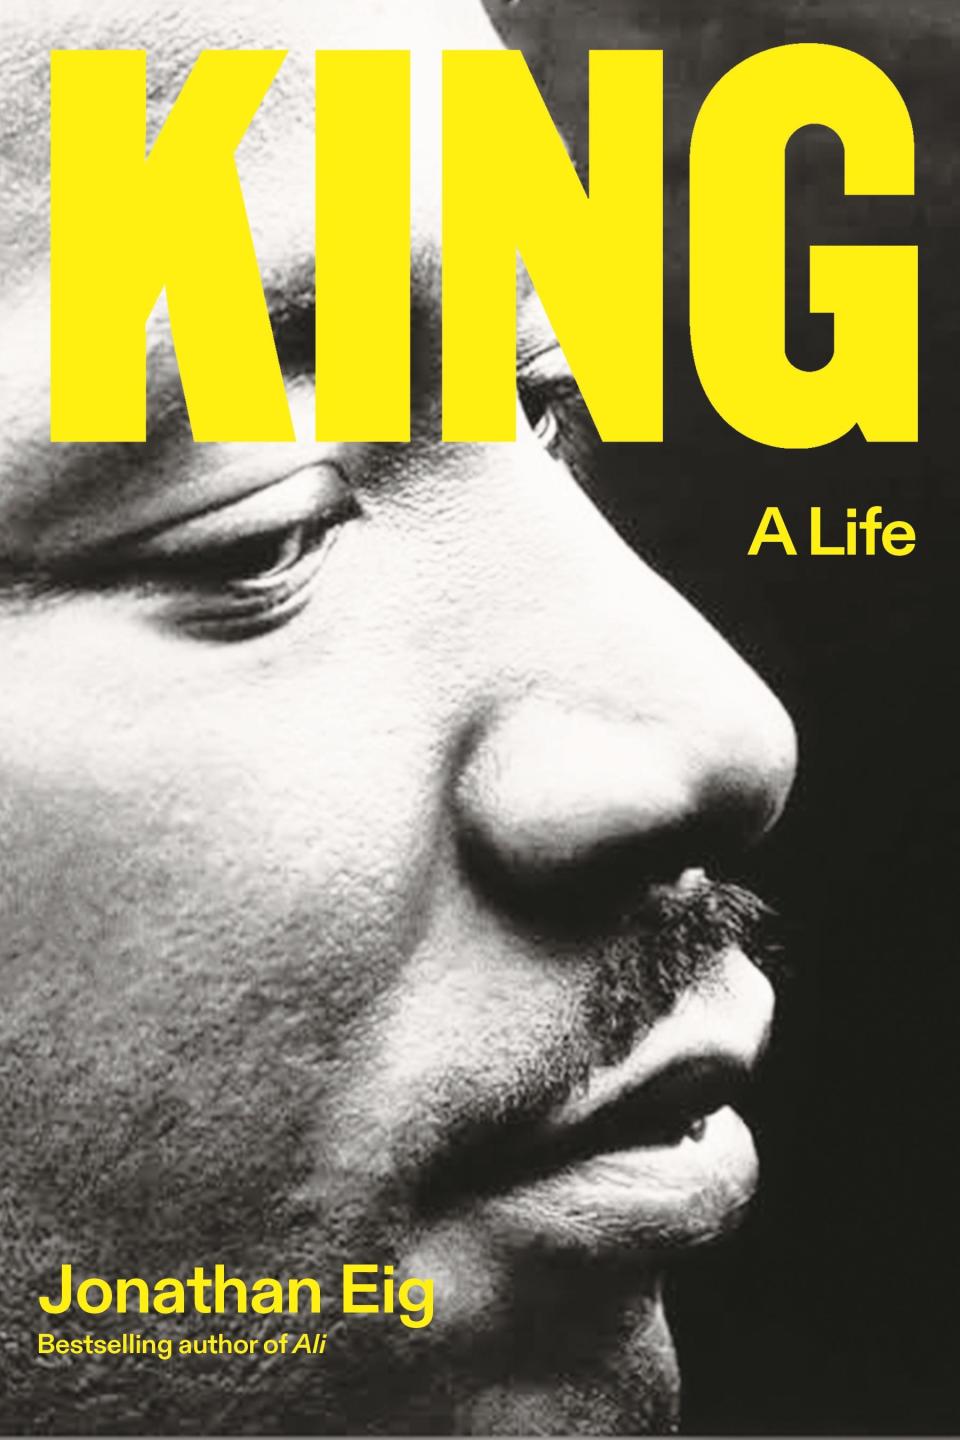 "King: A Life" by Jonathan Eig